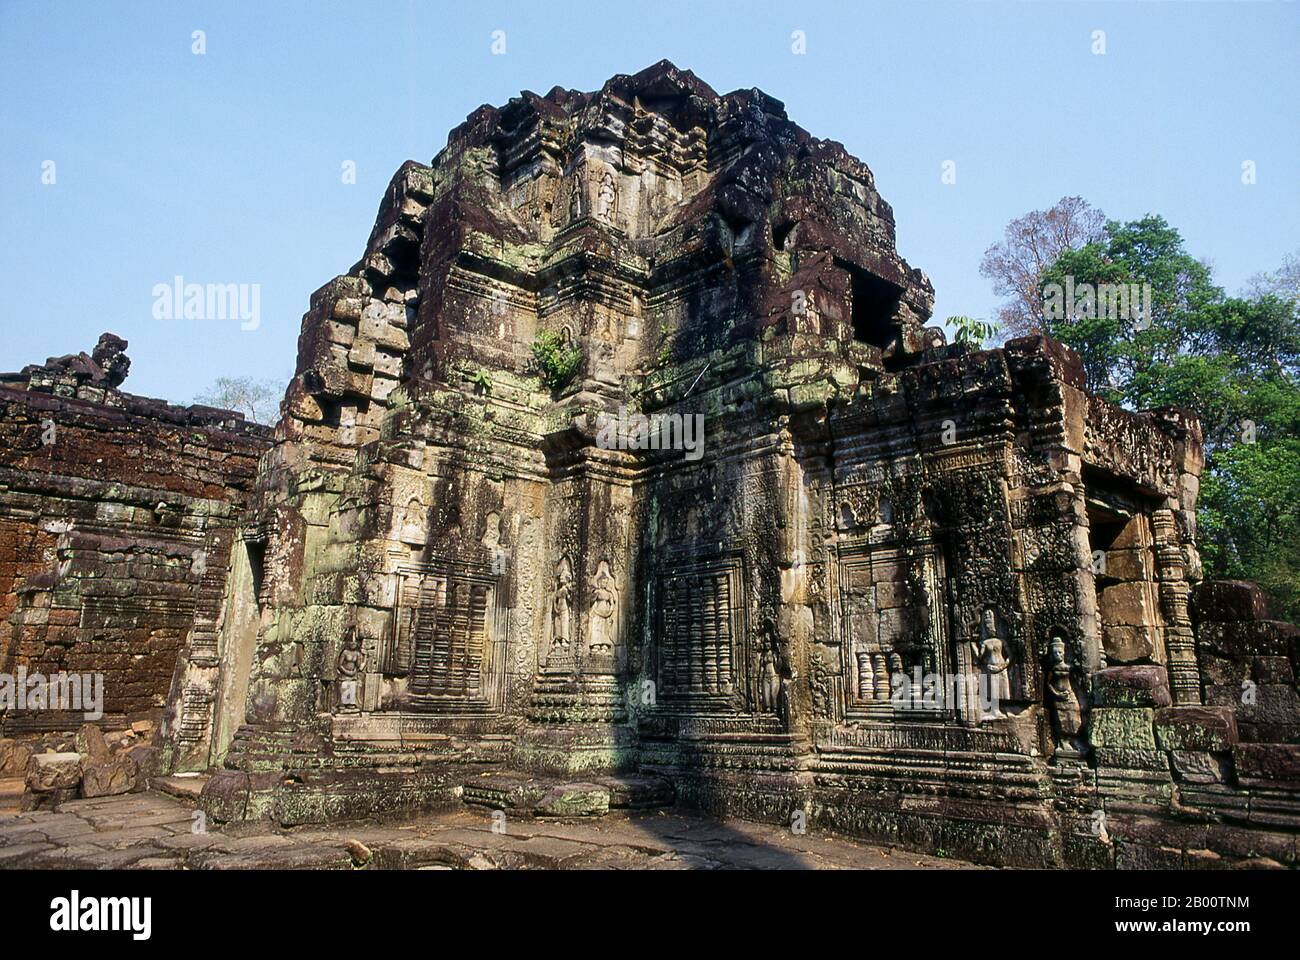 Cambogia: Preah Khan, Angkor. Preah Khan (Tempio della Spada Sacra) è stato costruito nel tardo 12 ° secolo (1191) da Jayavarman VII e si trova appena a nord di Angkor Thom. Il tempio fu costruito sul luogo della vittoria di Jayavarman VII sui Cham invasori nel 1191. Era il centro di un'organizzazione consistente, con quasi 100,000 funzionari e funzionari. Fu un'università buddista alla volta. La divinità primaria del tempio è il boddhisatva Avalokiteshvara sotto forma di padre di Jayavarman. Foto Stock